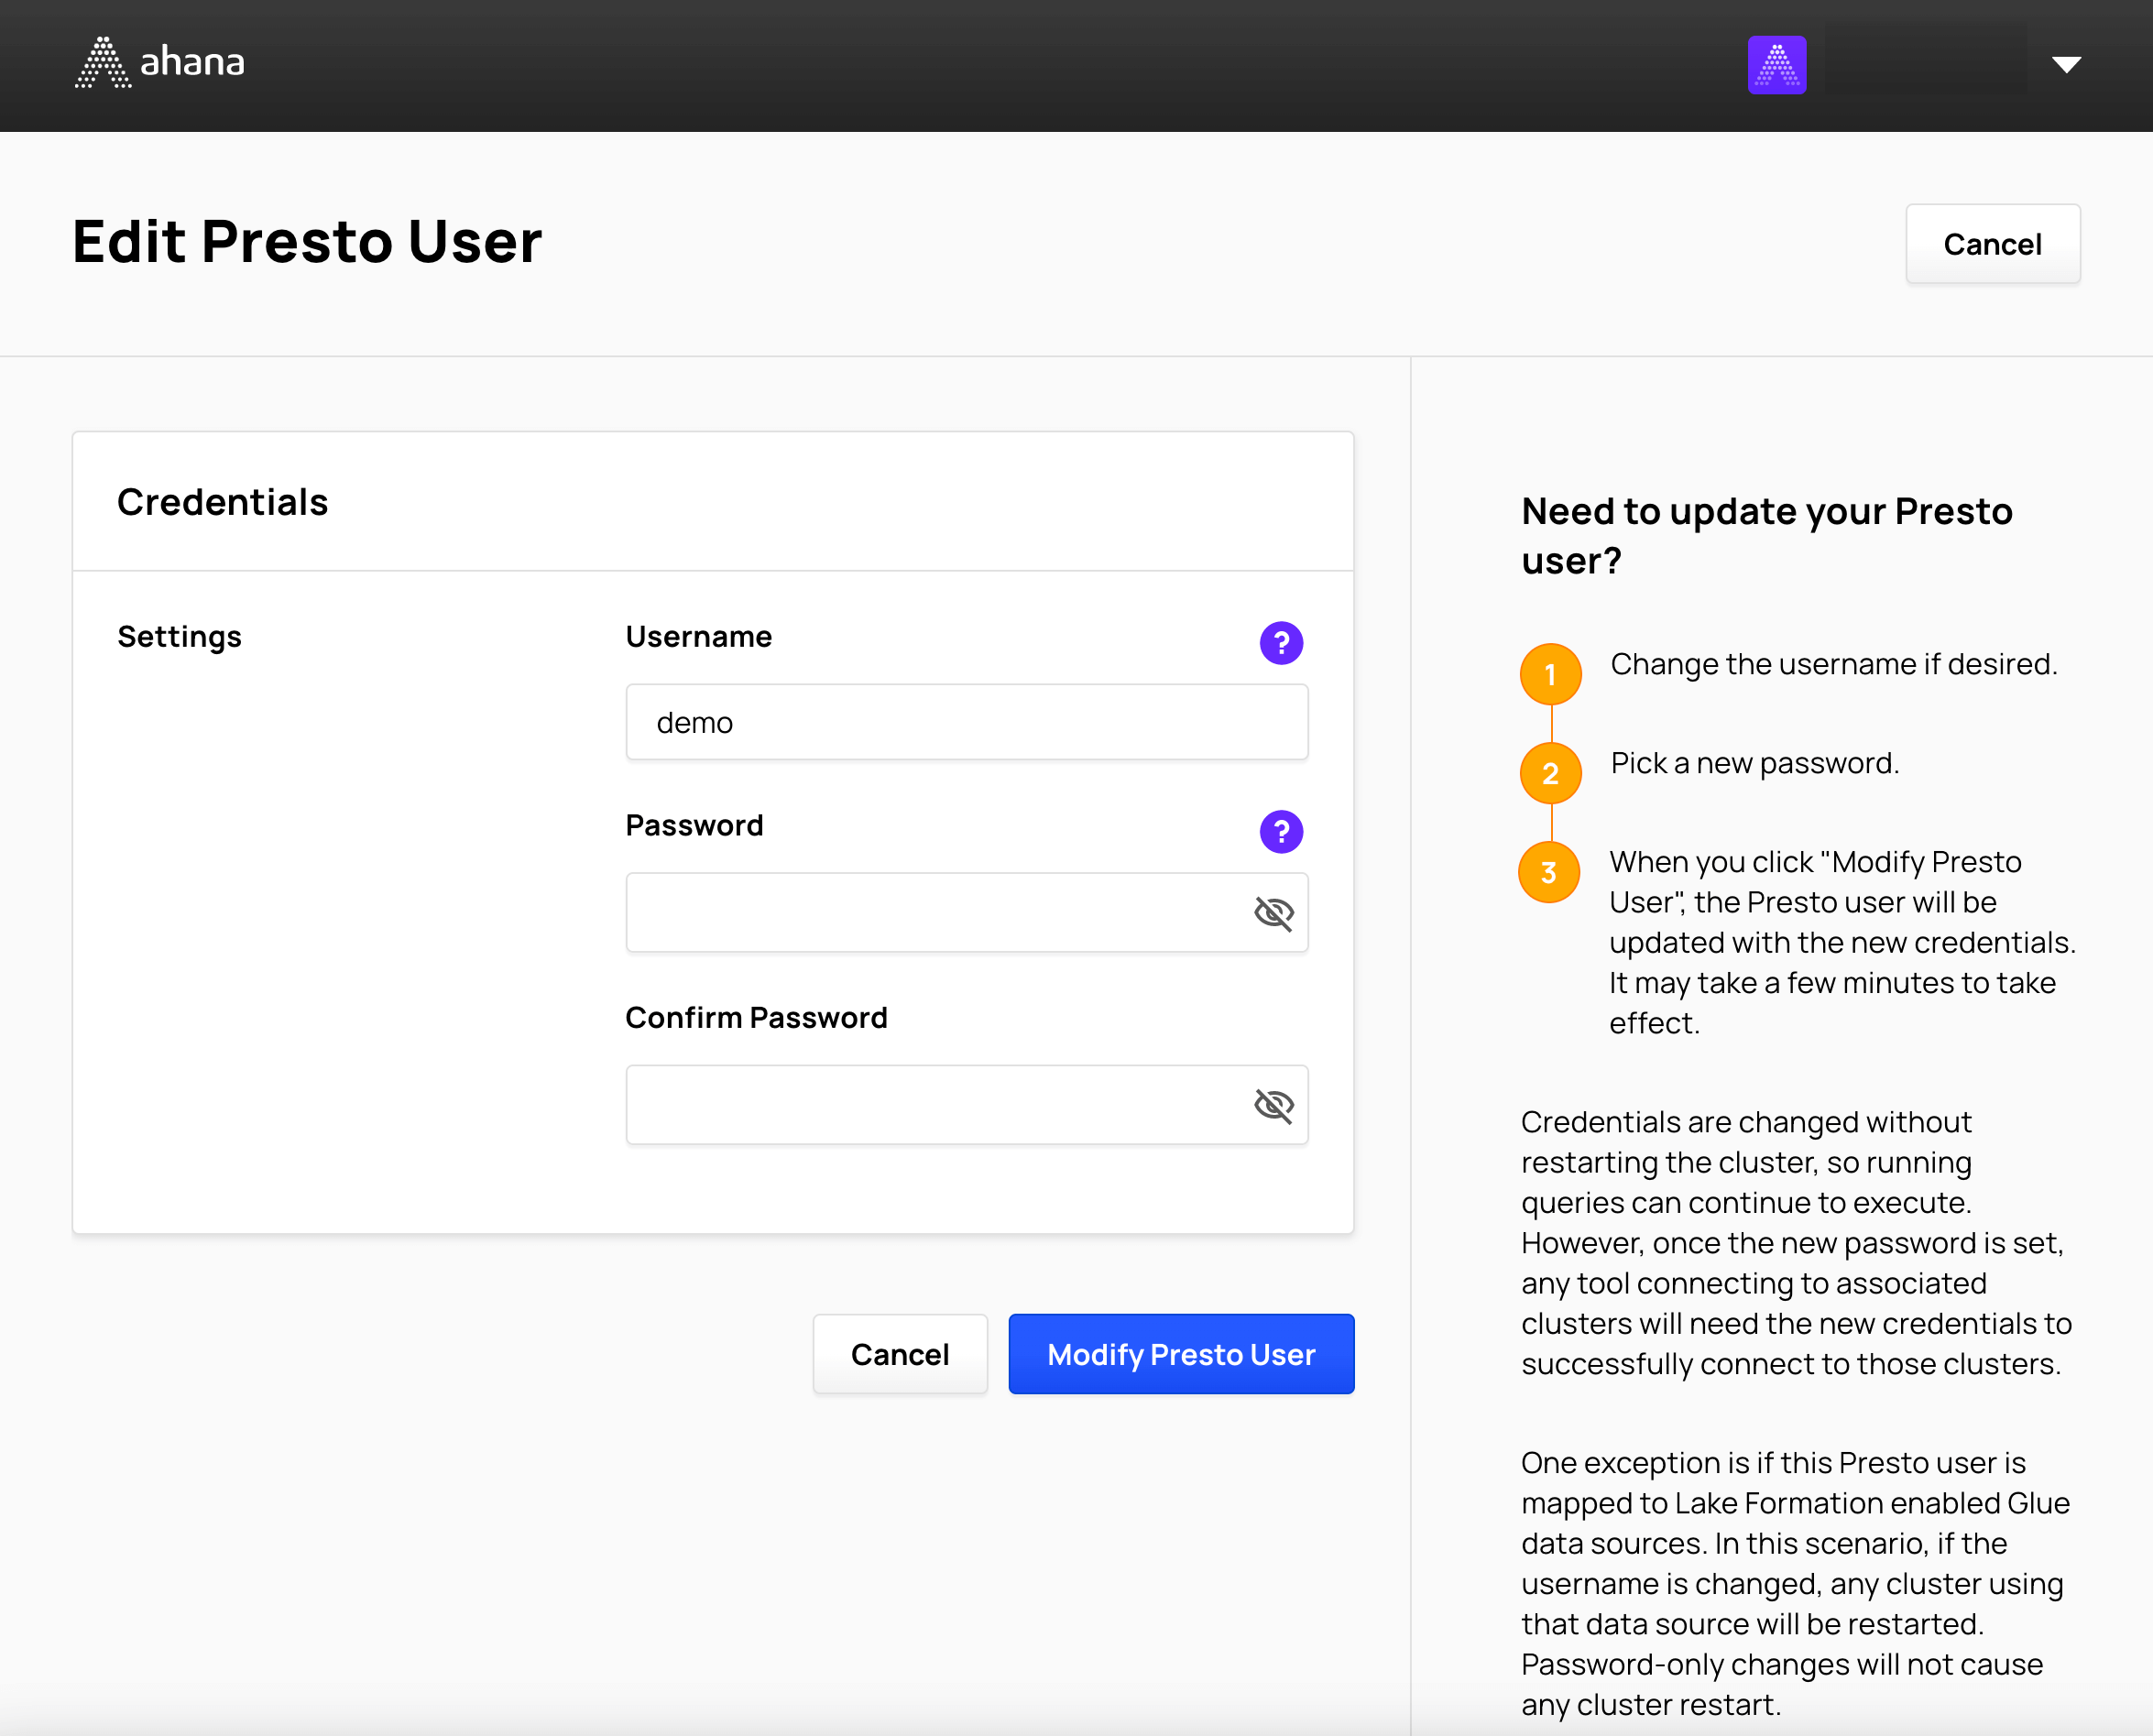 Modify a new Presto user